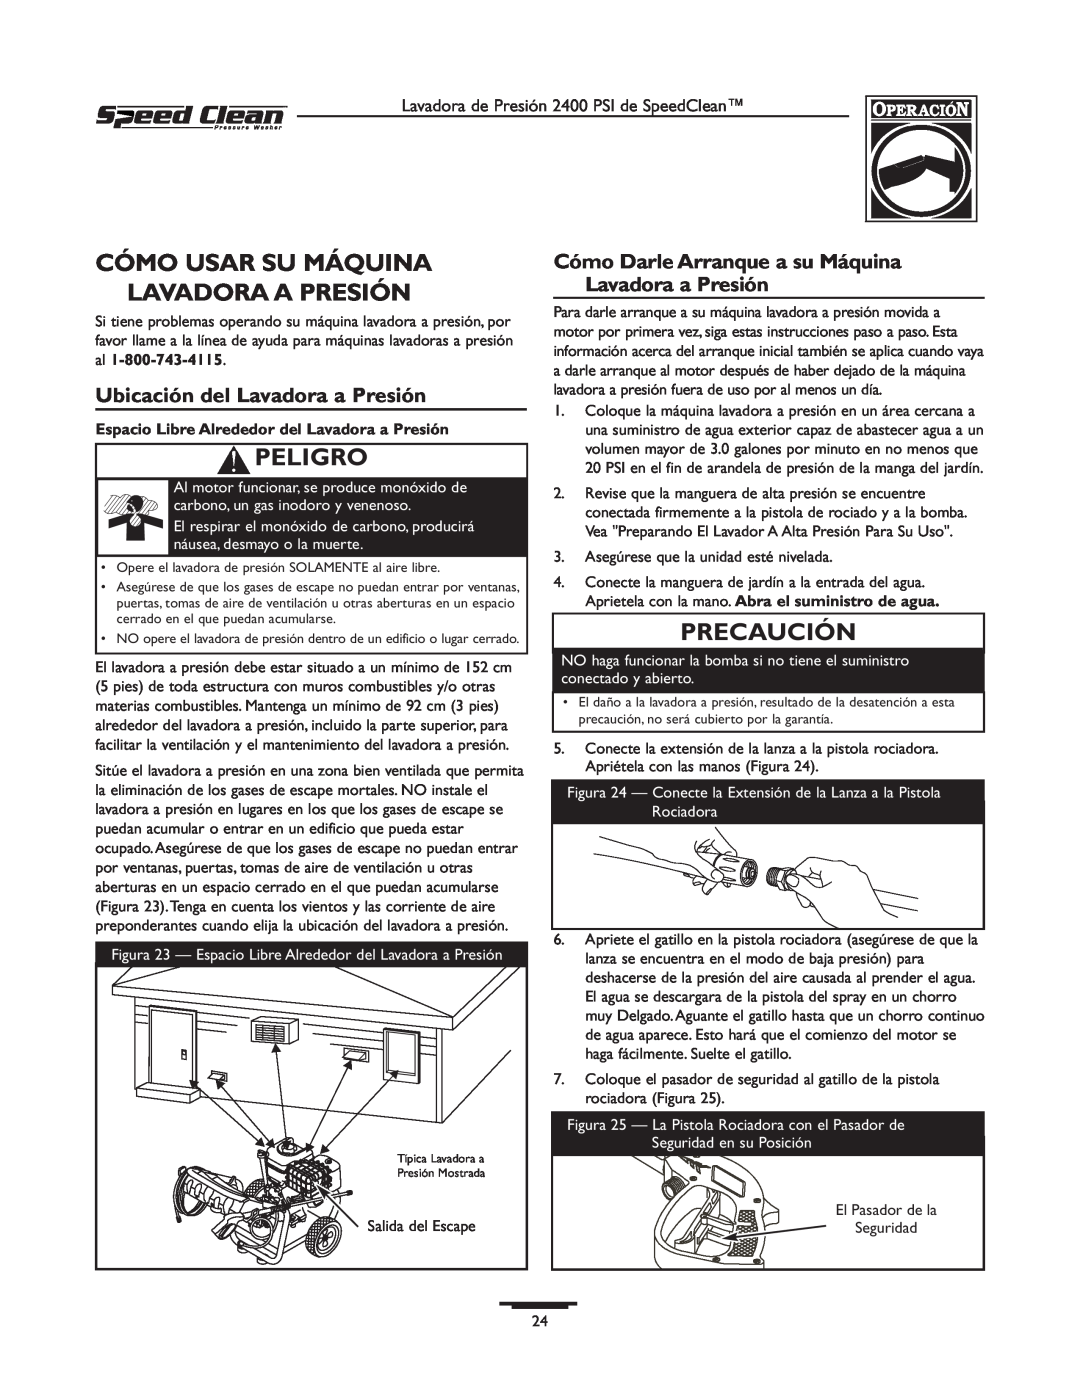 Briggs & Stratton 020227-0 Cómo Usar Su Máquina Lavadora A Presión, Ubicación del Lavadora a Presión, Peligro, Precaución 